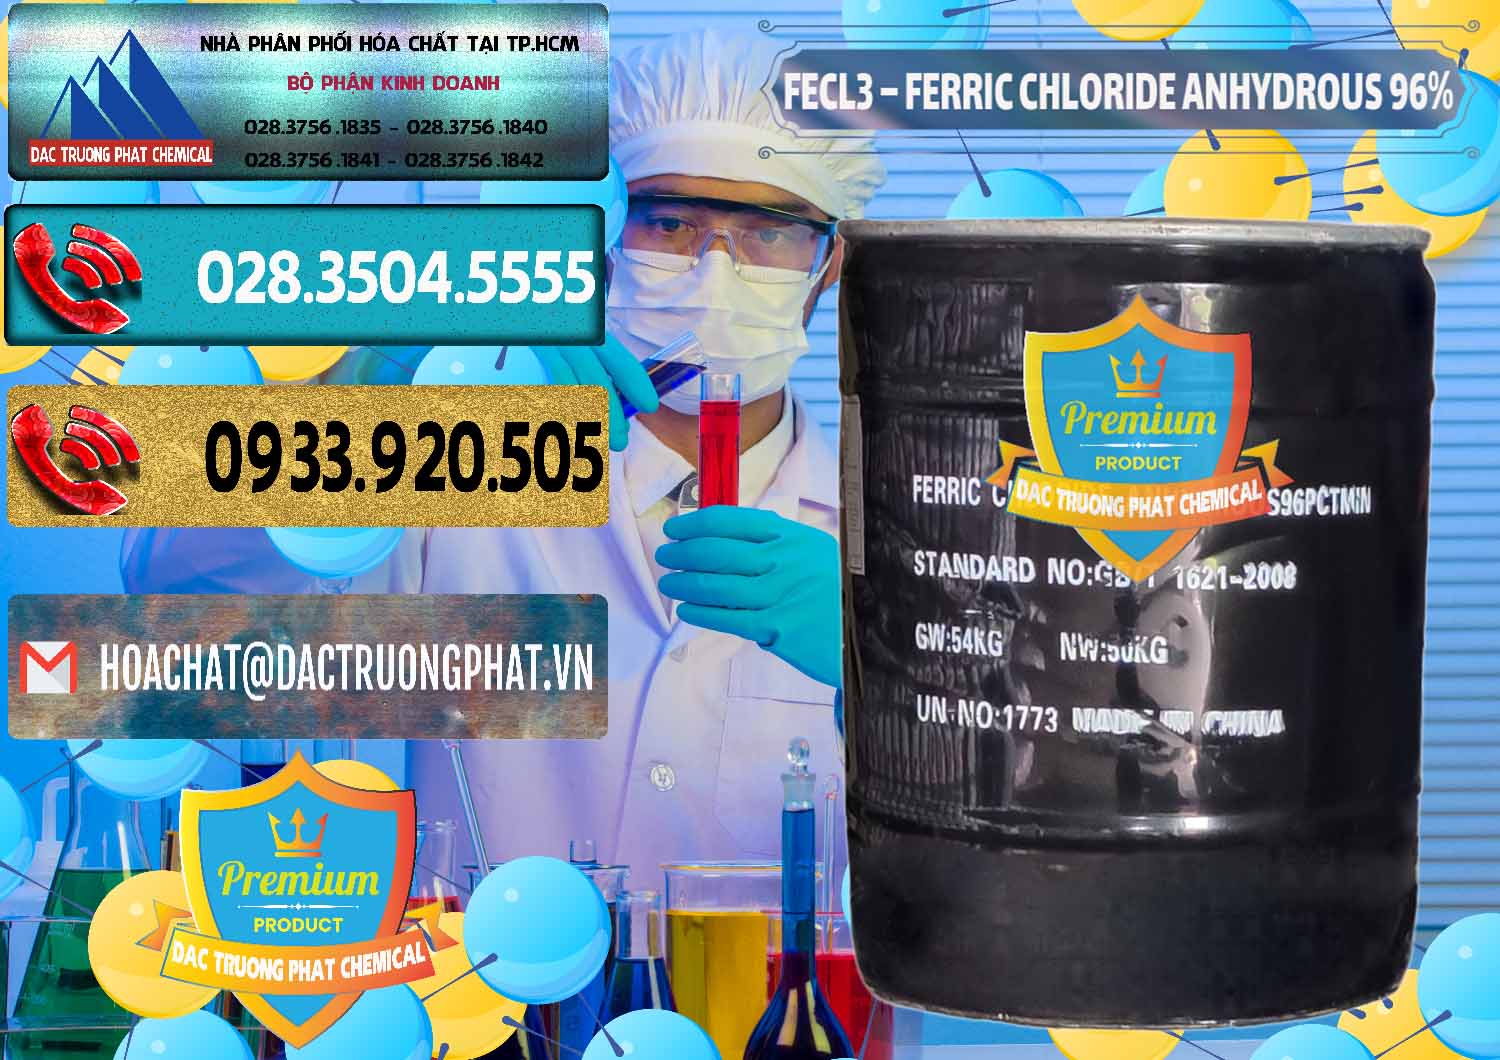 Nhập khẩu _ bán FECL3 – Ferric Chloride Anhydrous 96% Trung Quốc China - 0065 - Nơi phân phối và cung cấp hóa chất tại TP.HCM - hoachatdetnhuom.com